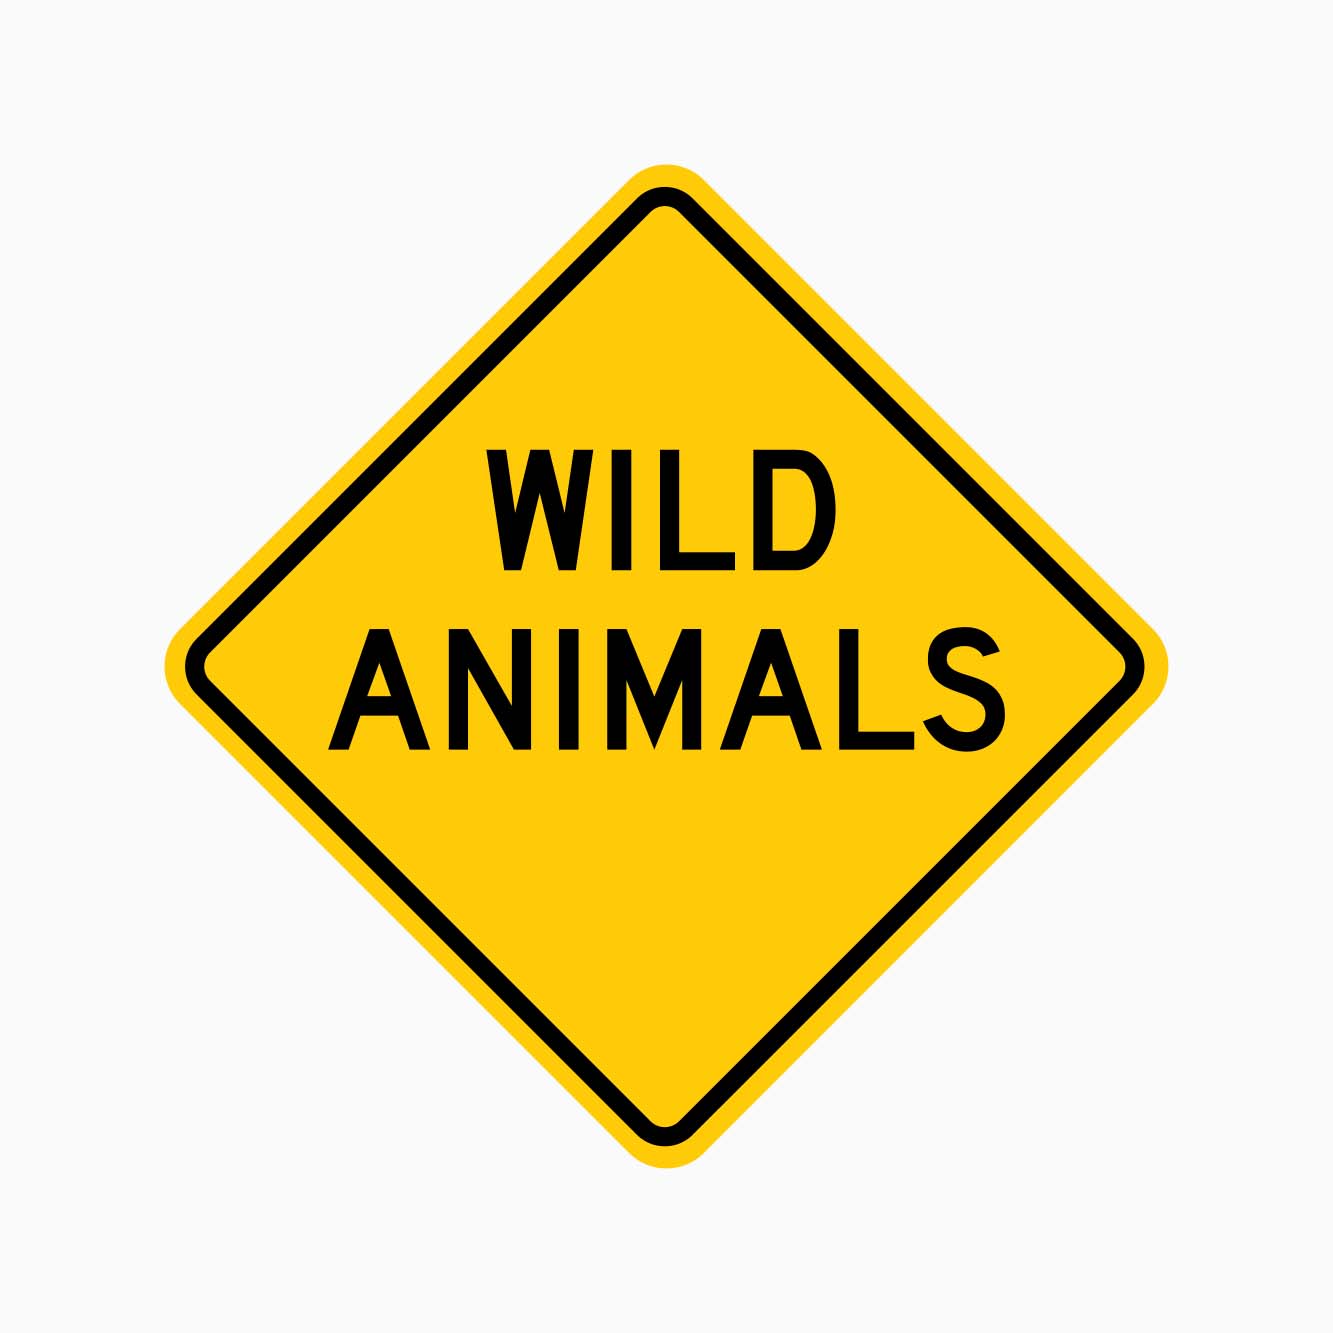 Wild Animals Sign w5-49 - GET SIGNS ROAD SAFETY SUPPLIER